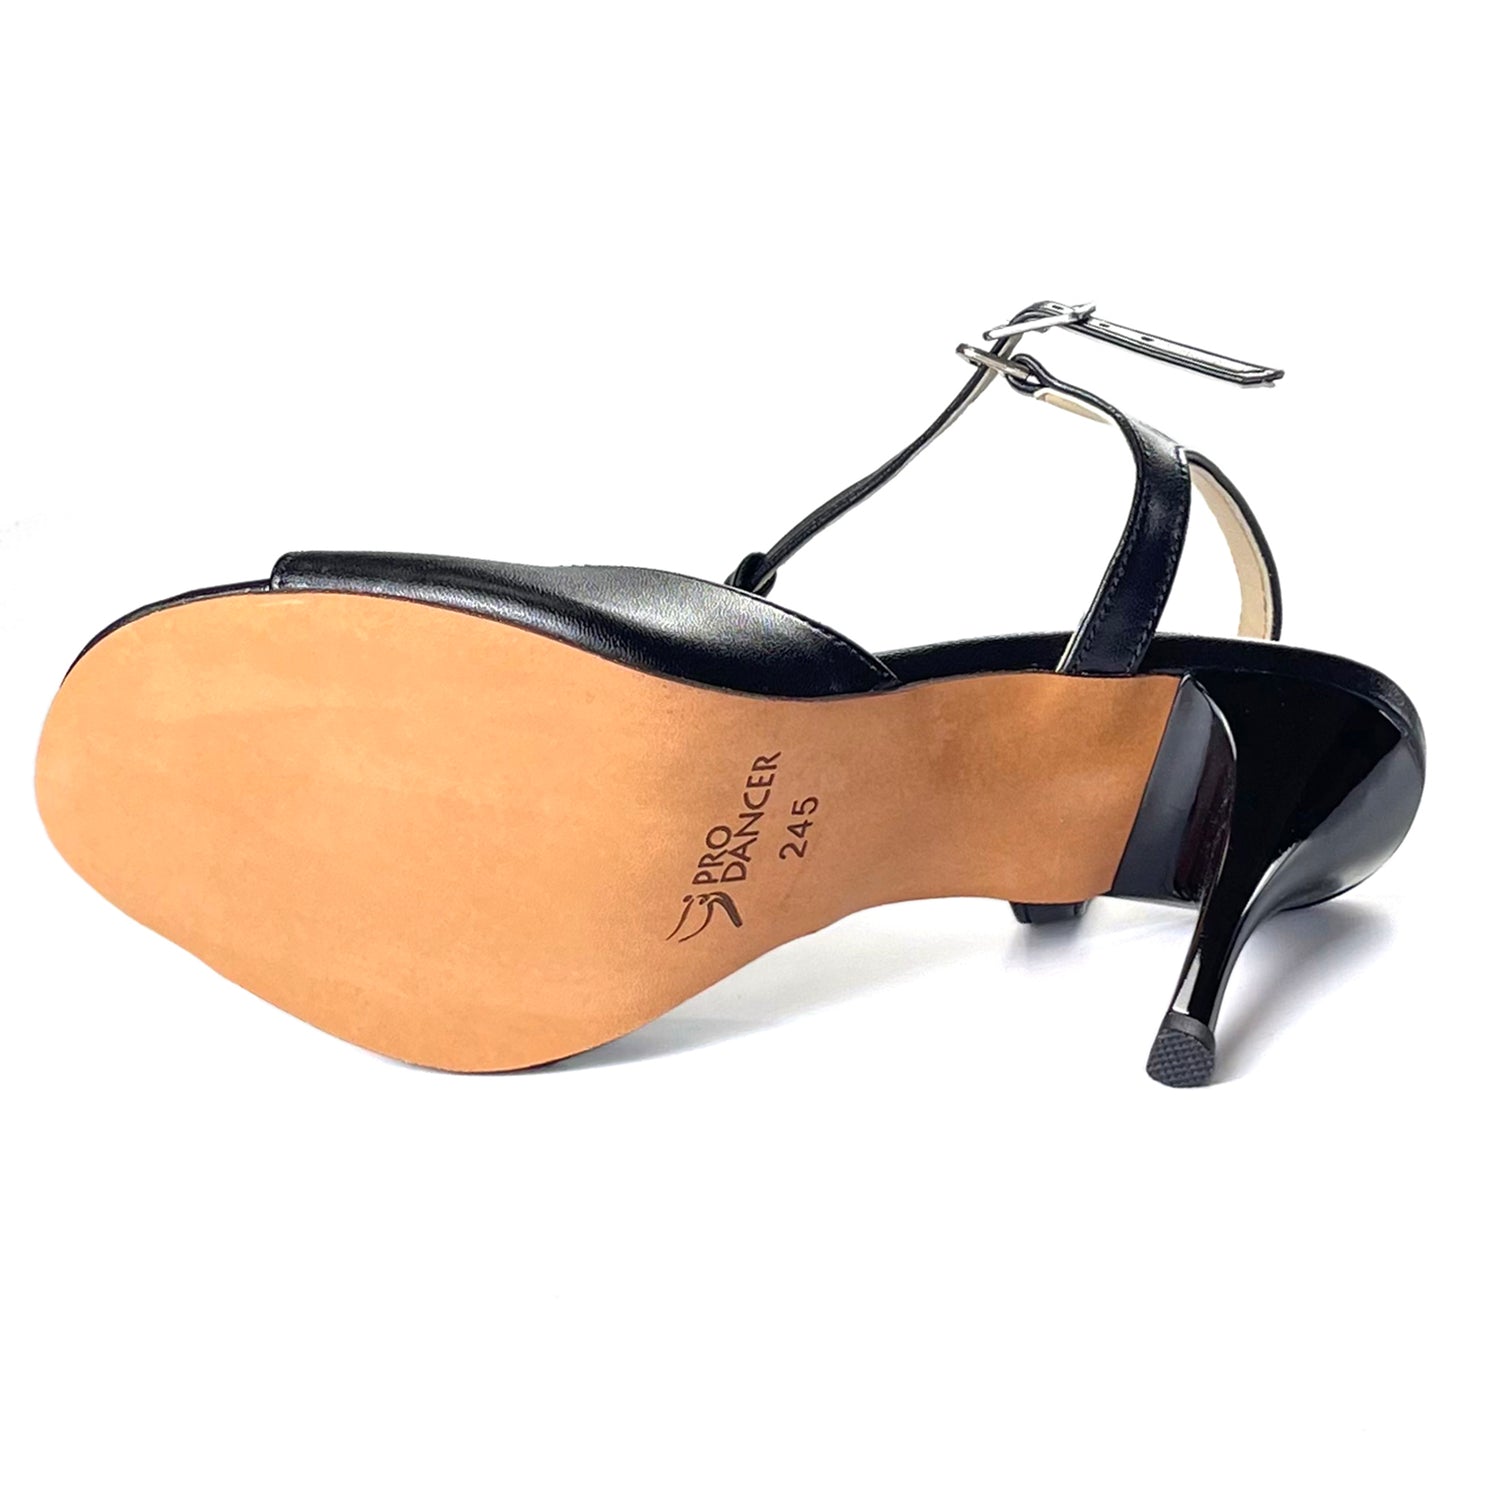 Pro Dancer Women's Tango Shoes high heel black leather sole dance sandals PD-9012D Argentina3